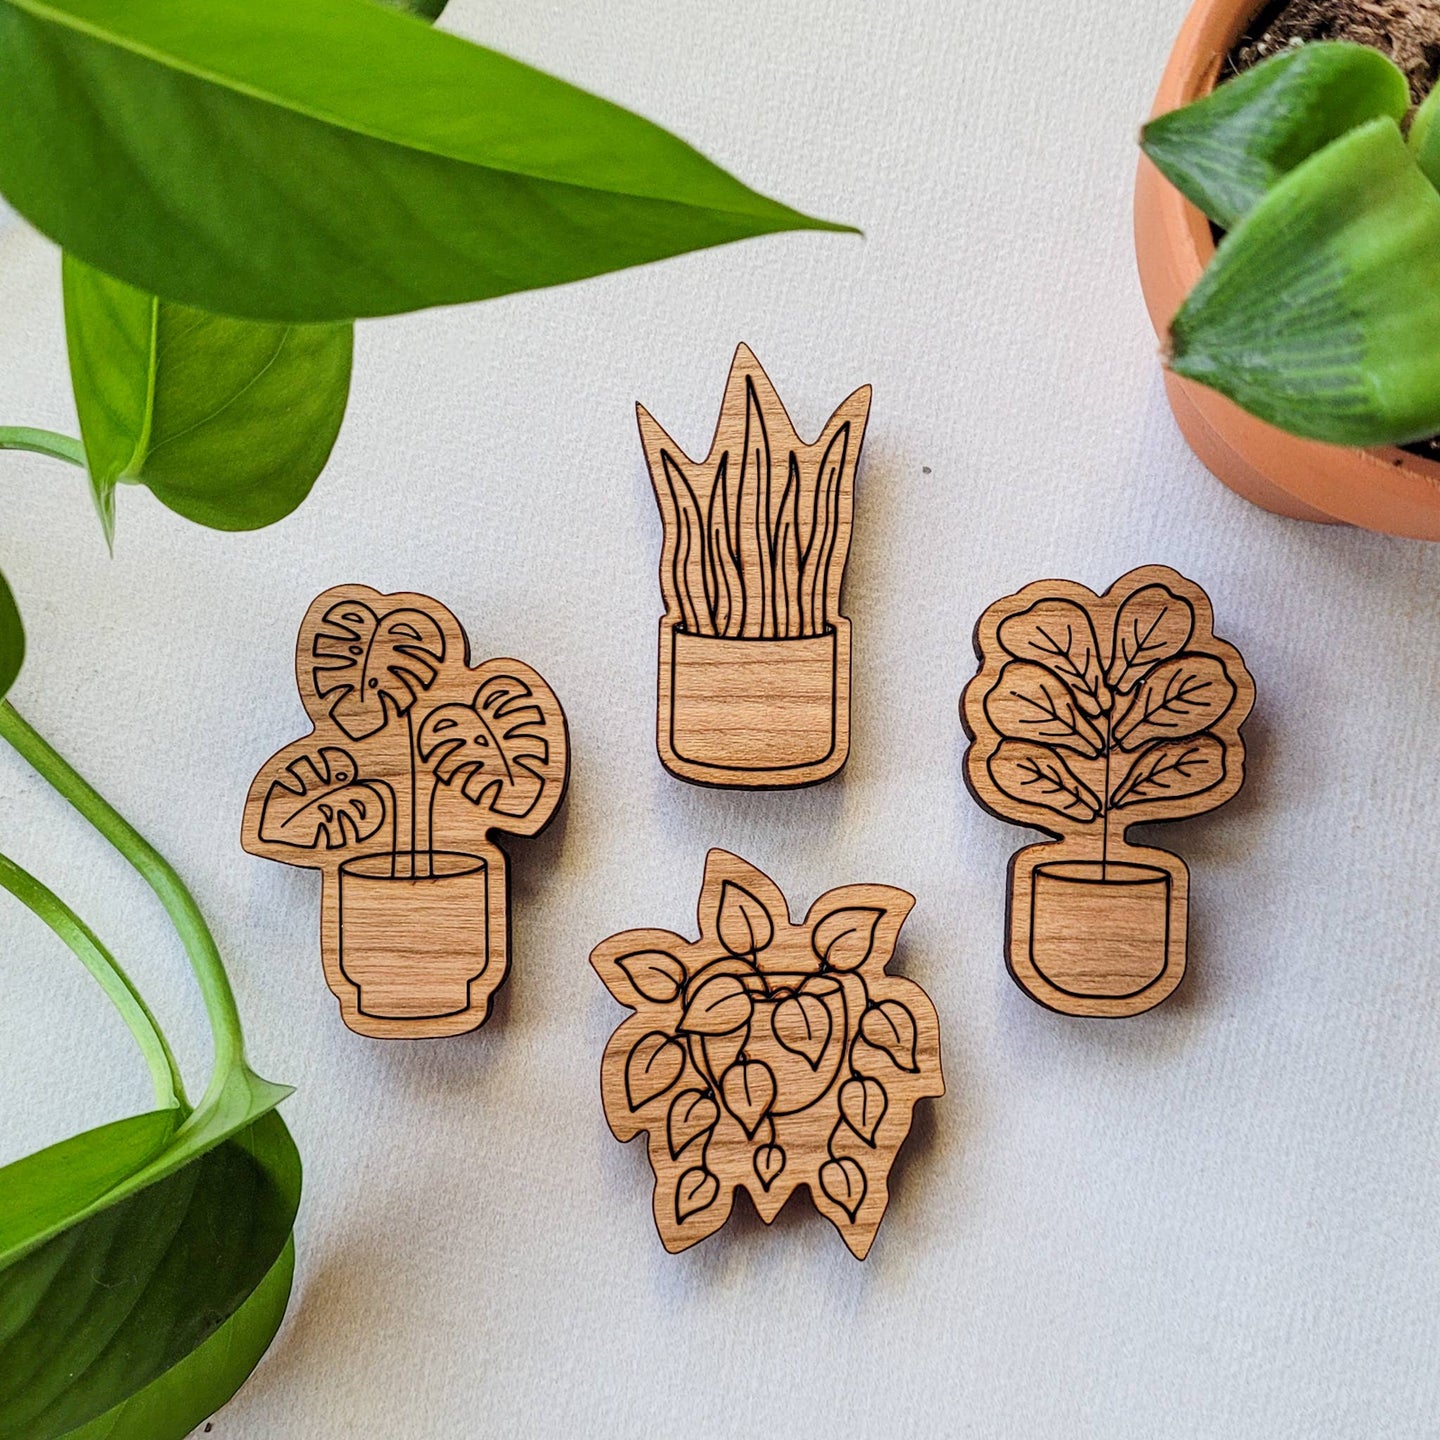 Leaf & Node - Houseplant Magnets (Sets of 4) - Wood Engraved